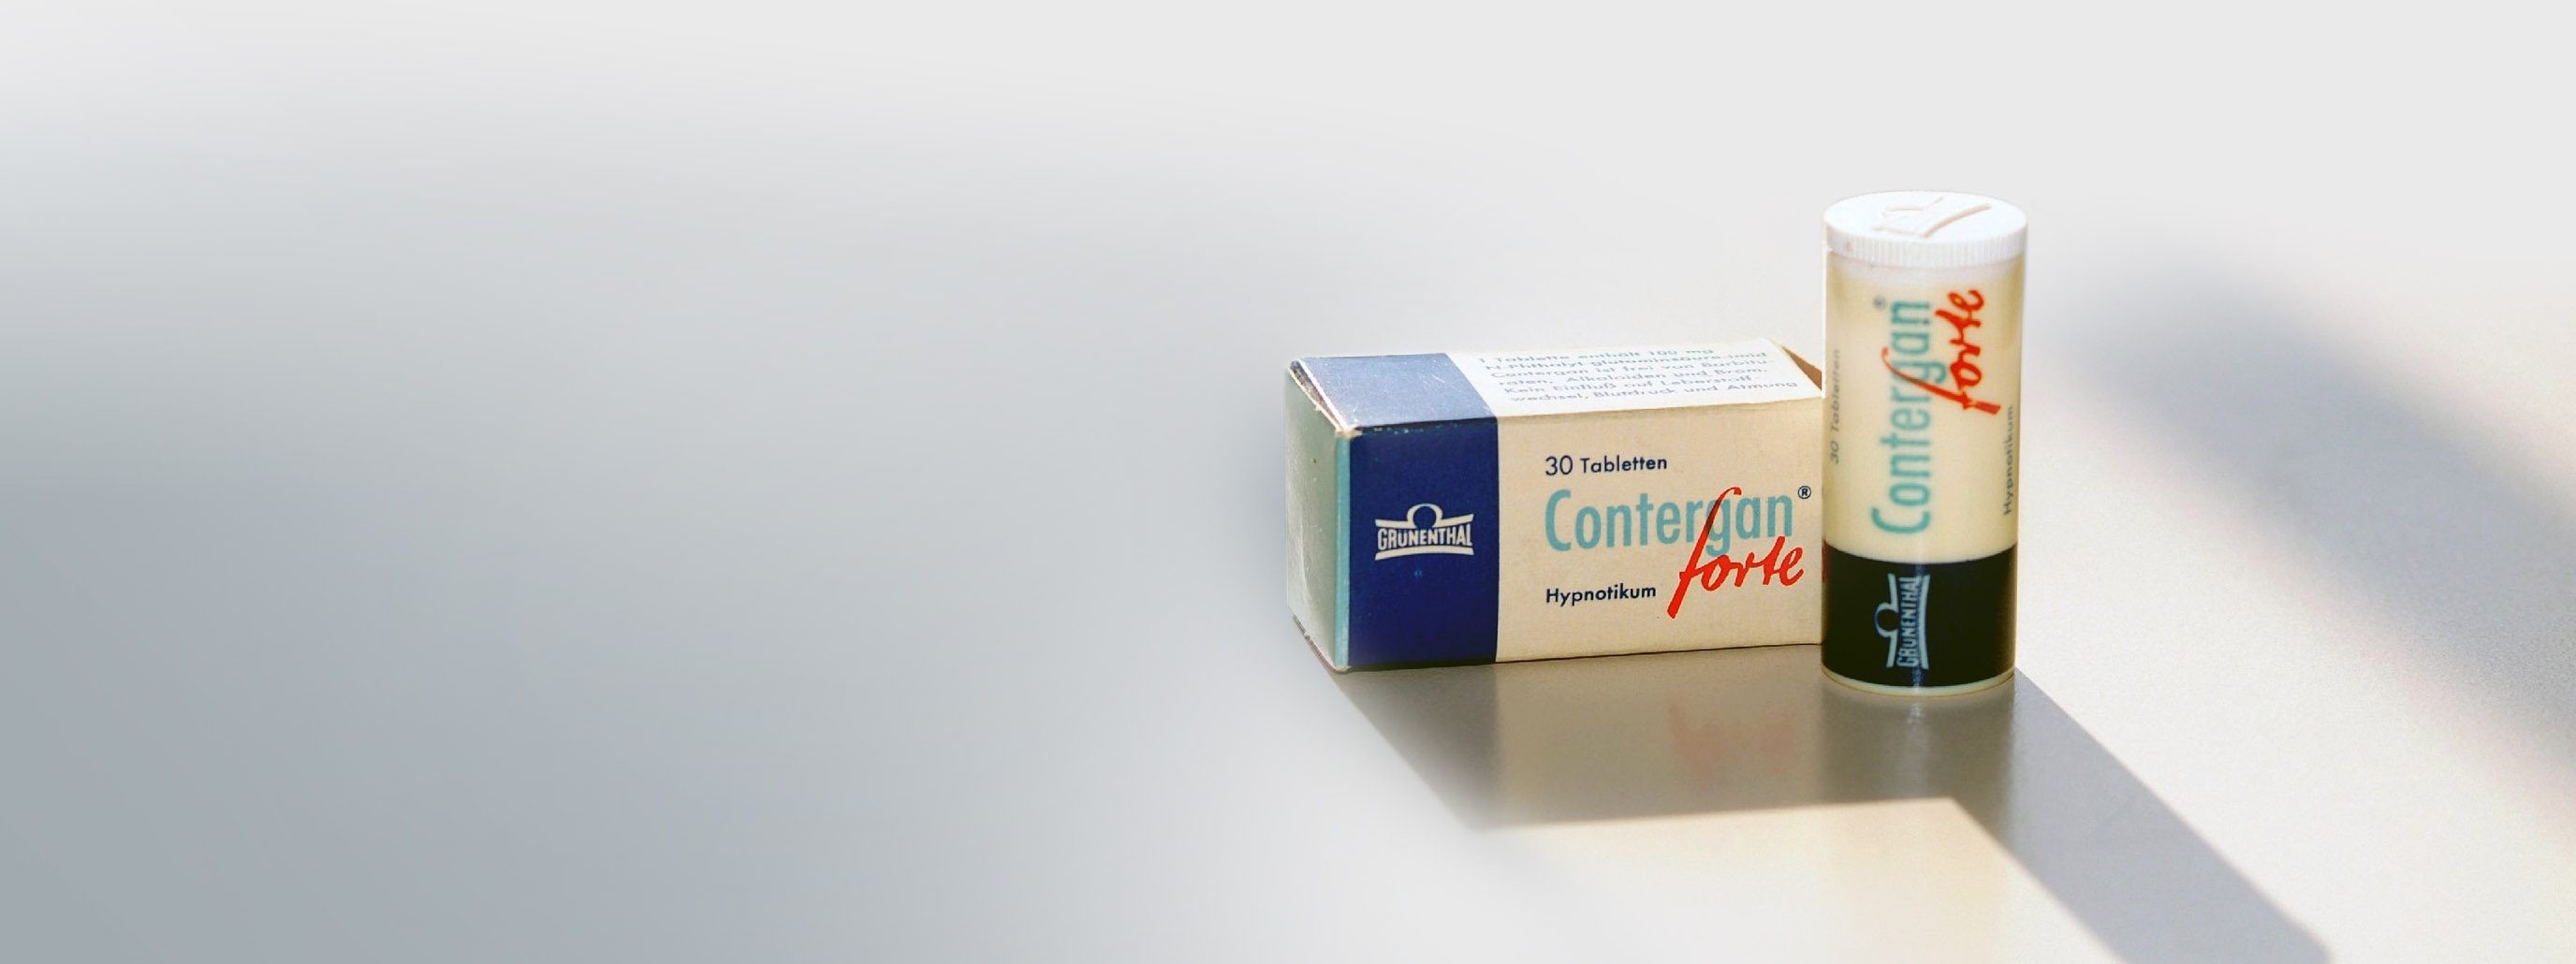 Eine Verpackung des Medikaments Contergan Forte. 